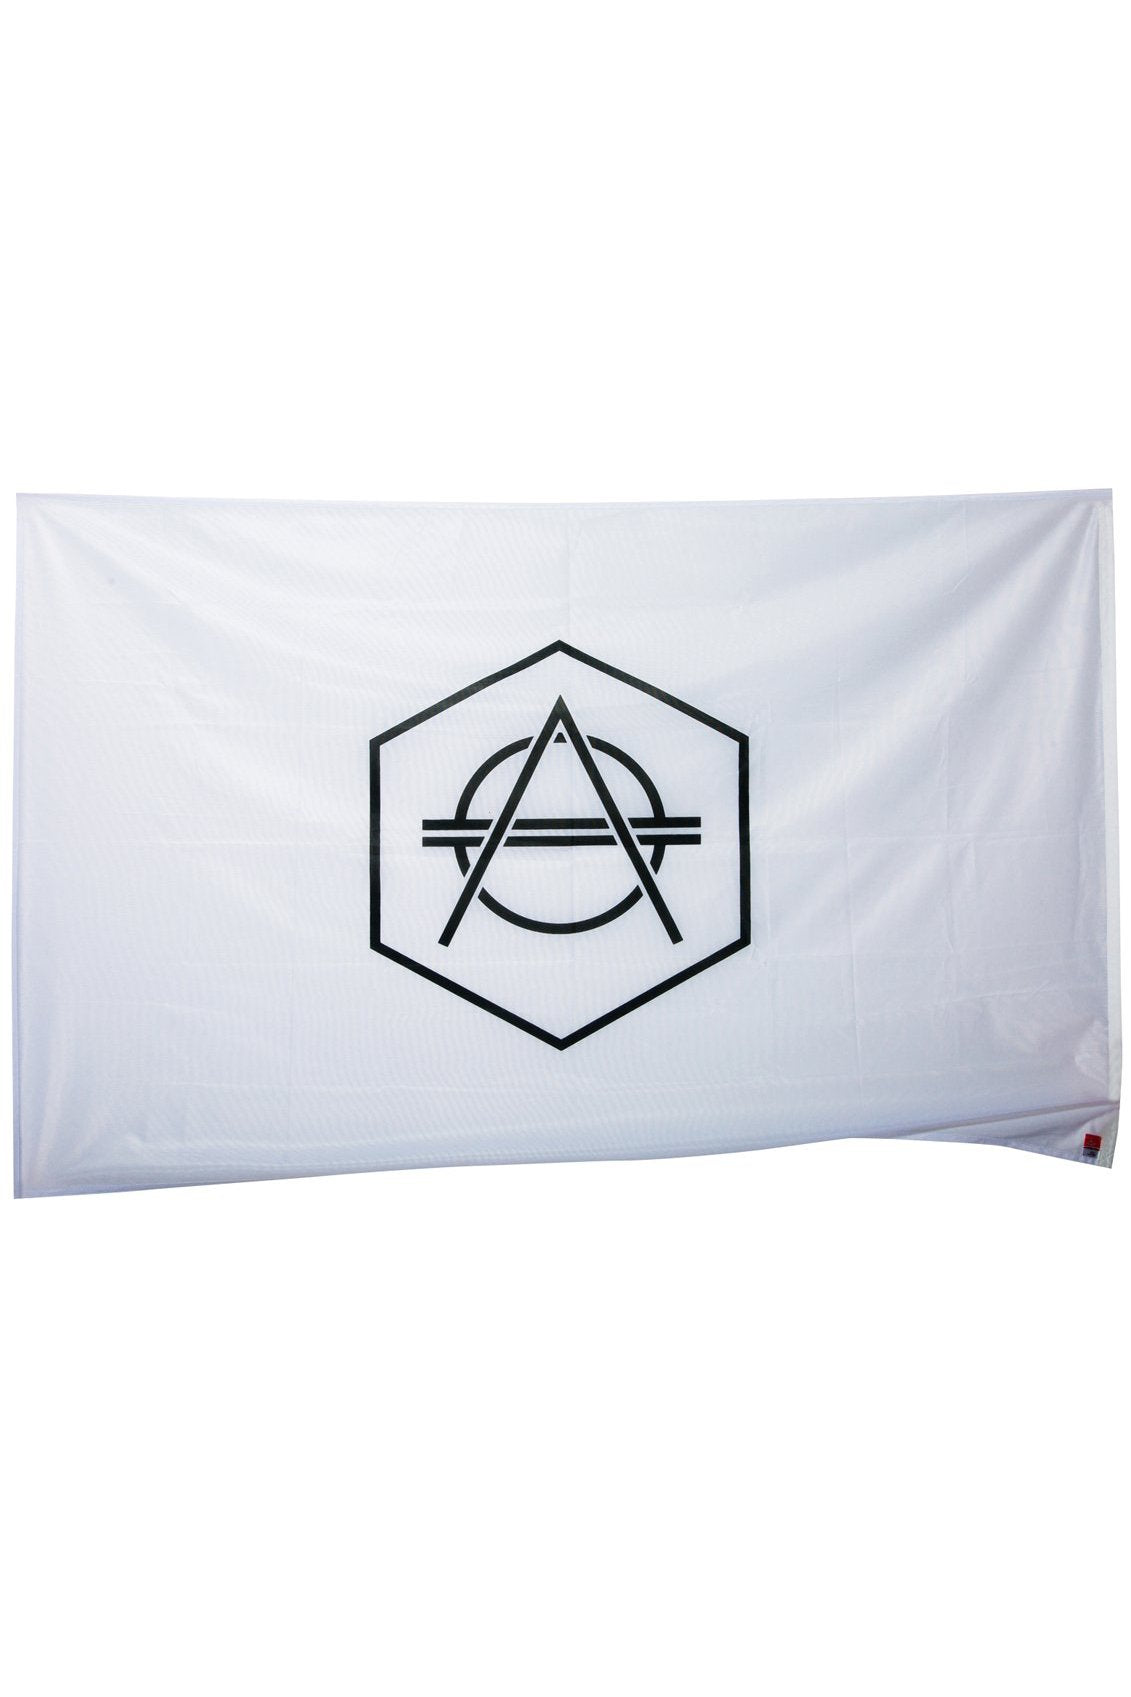 Official Don Diablo Flag white with black logo - HEXAGON - Don Diablo - Hexagon